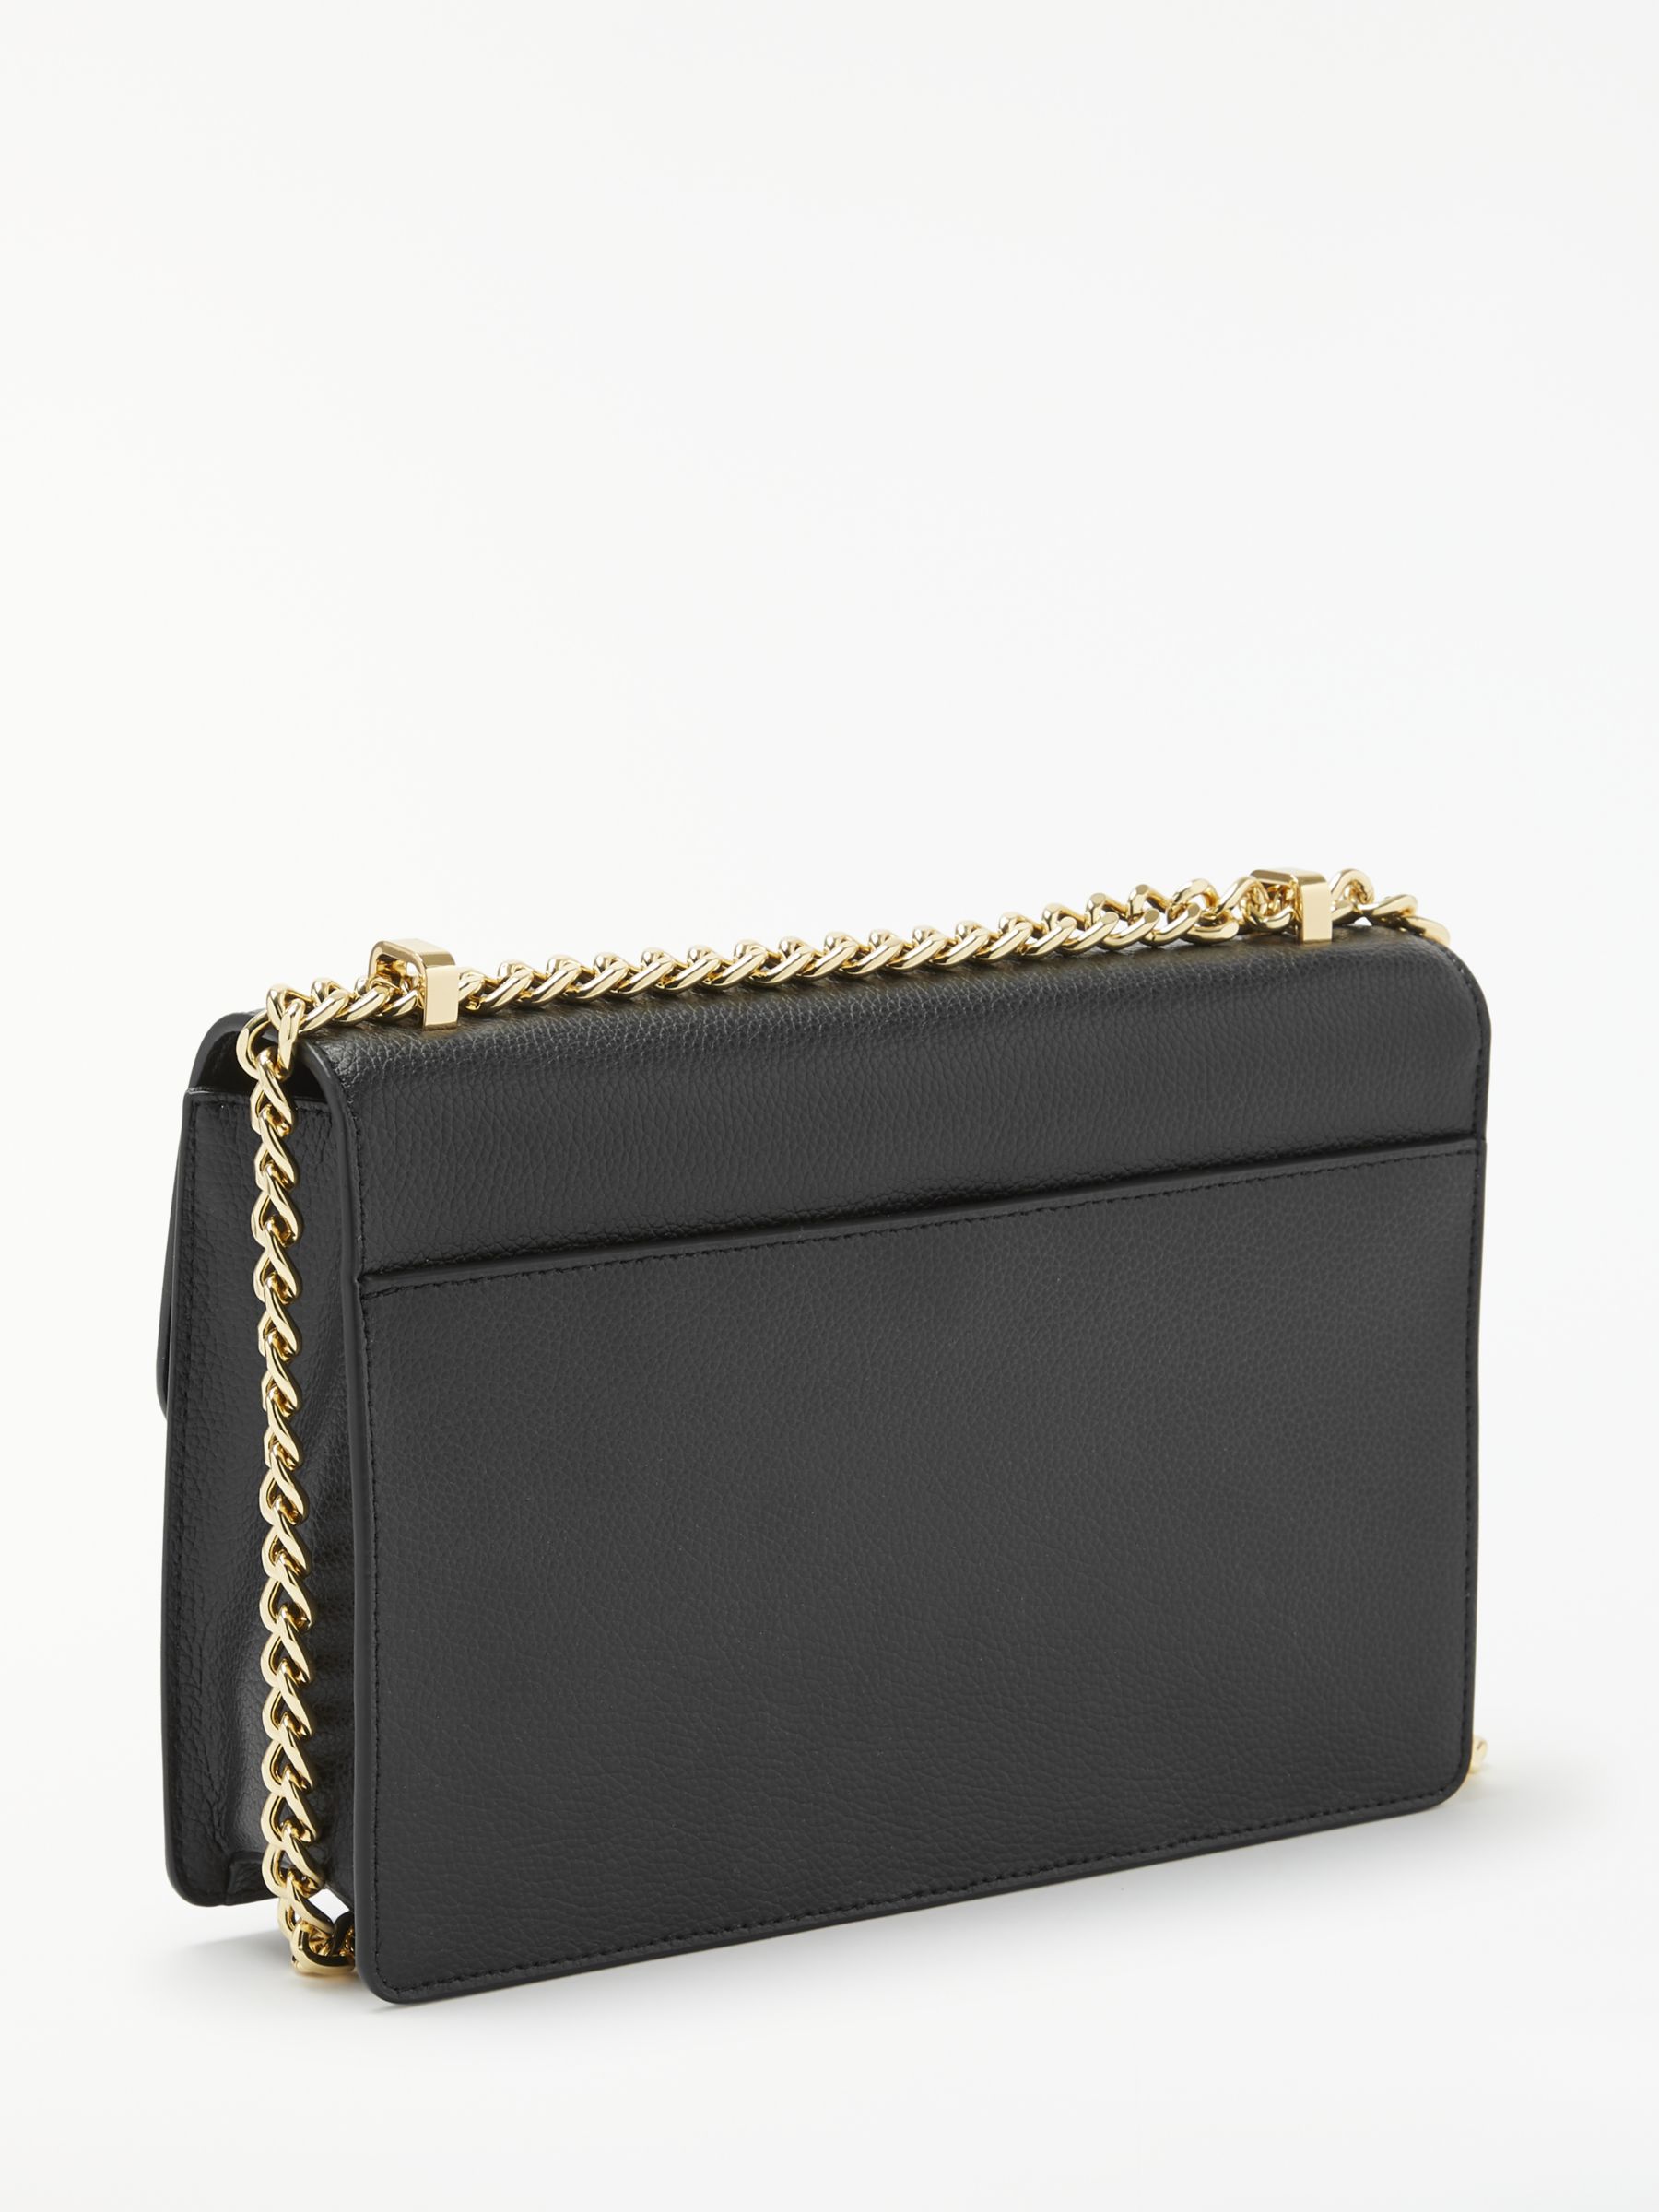 DKNY Elissa Charm Detail Leather Shoulder Bag, Black at John Lewis ...